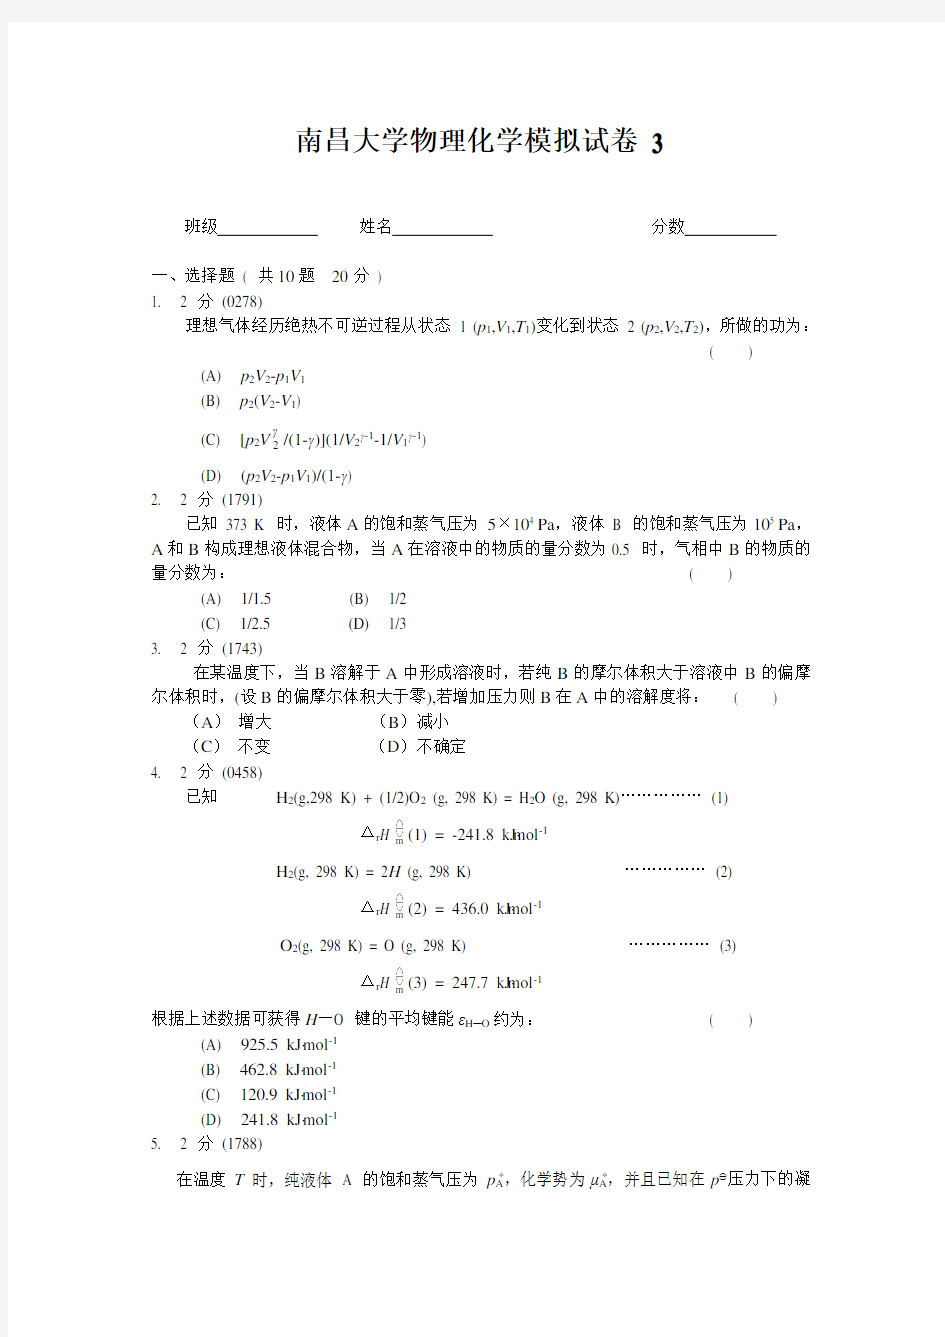 南昌大学物理化学模拟试卷3及答案(试卷由老师提供复习使用)